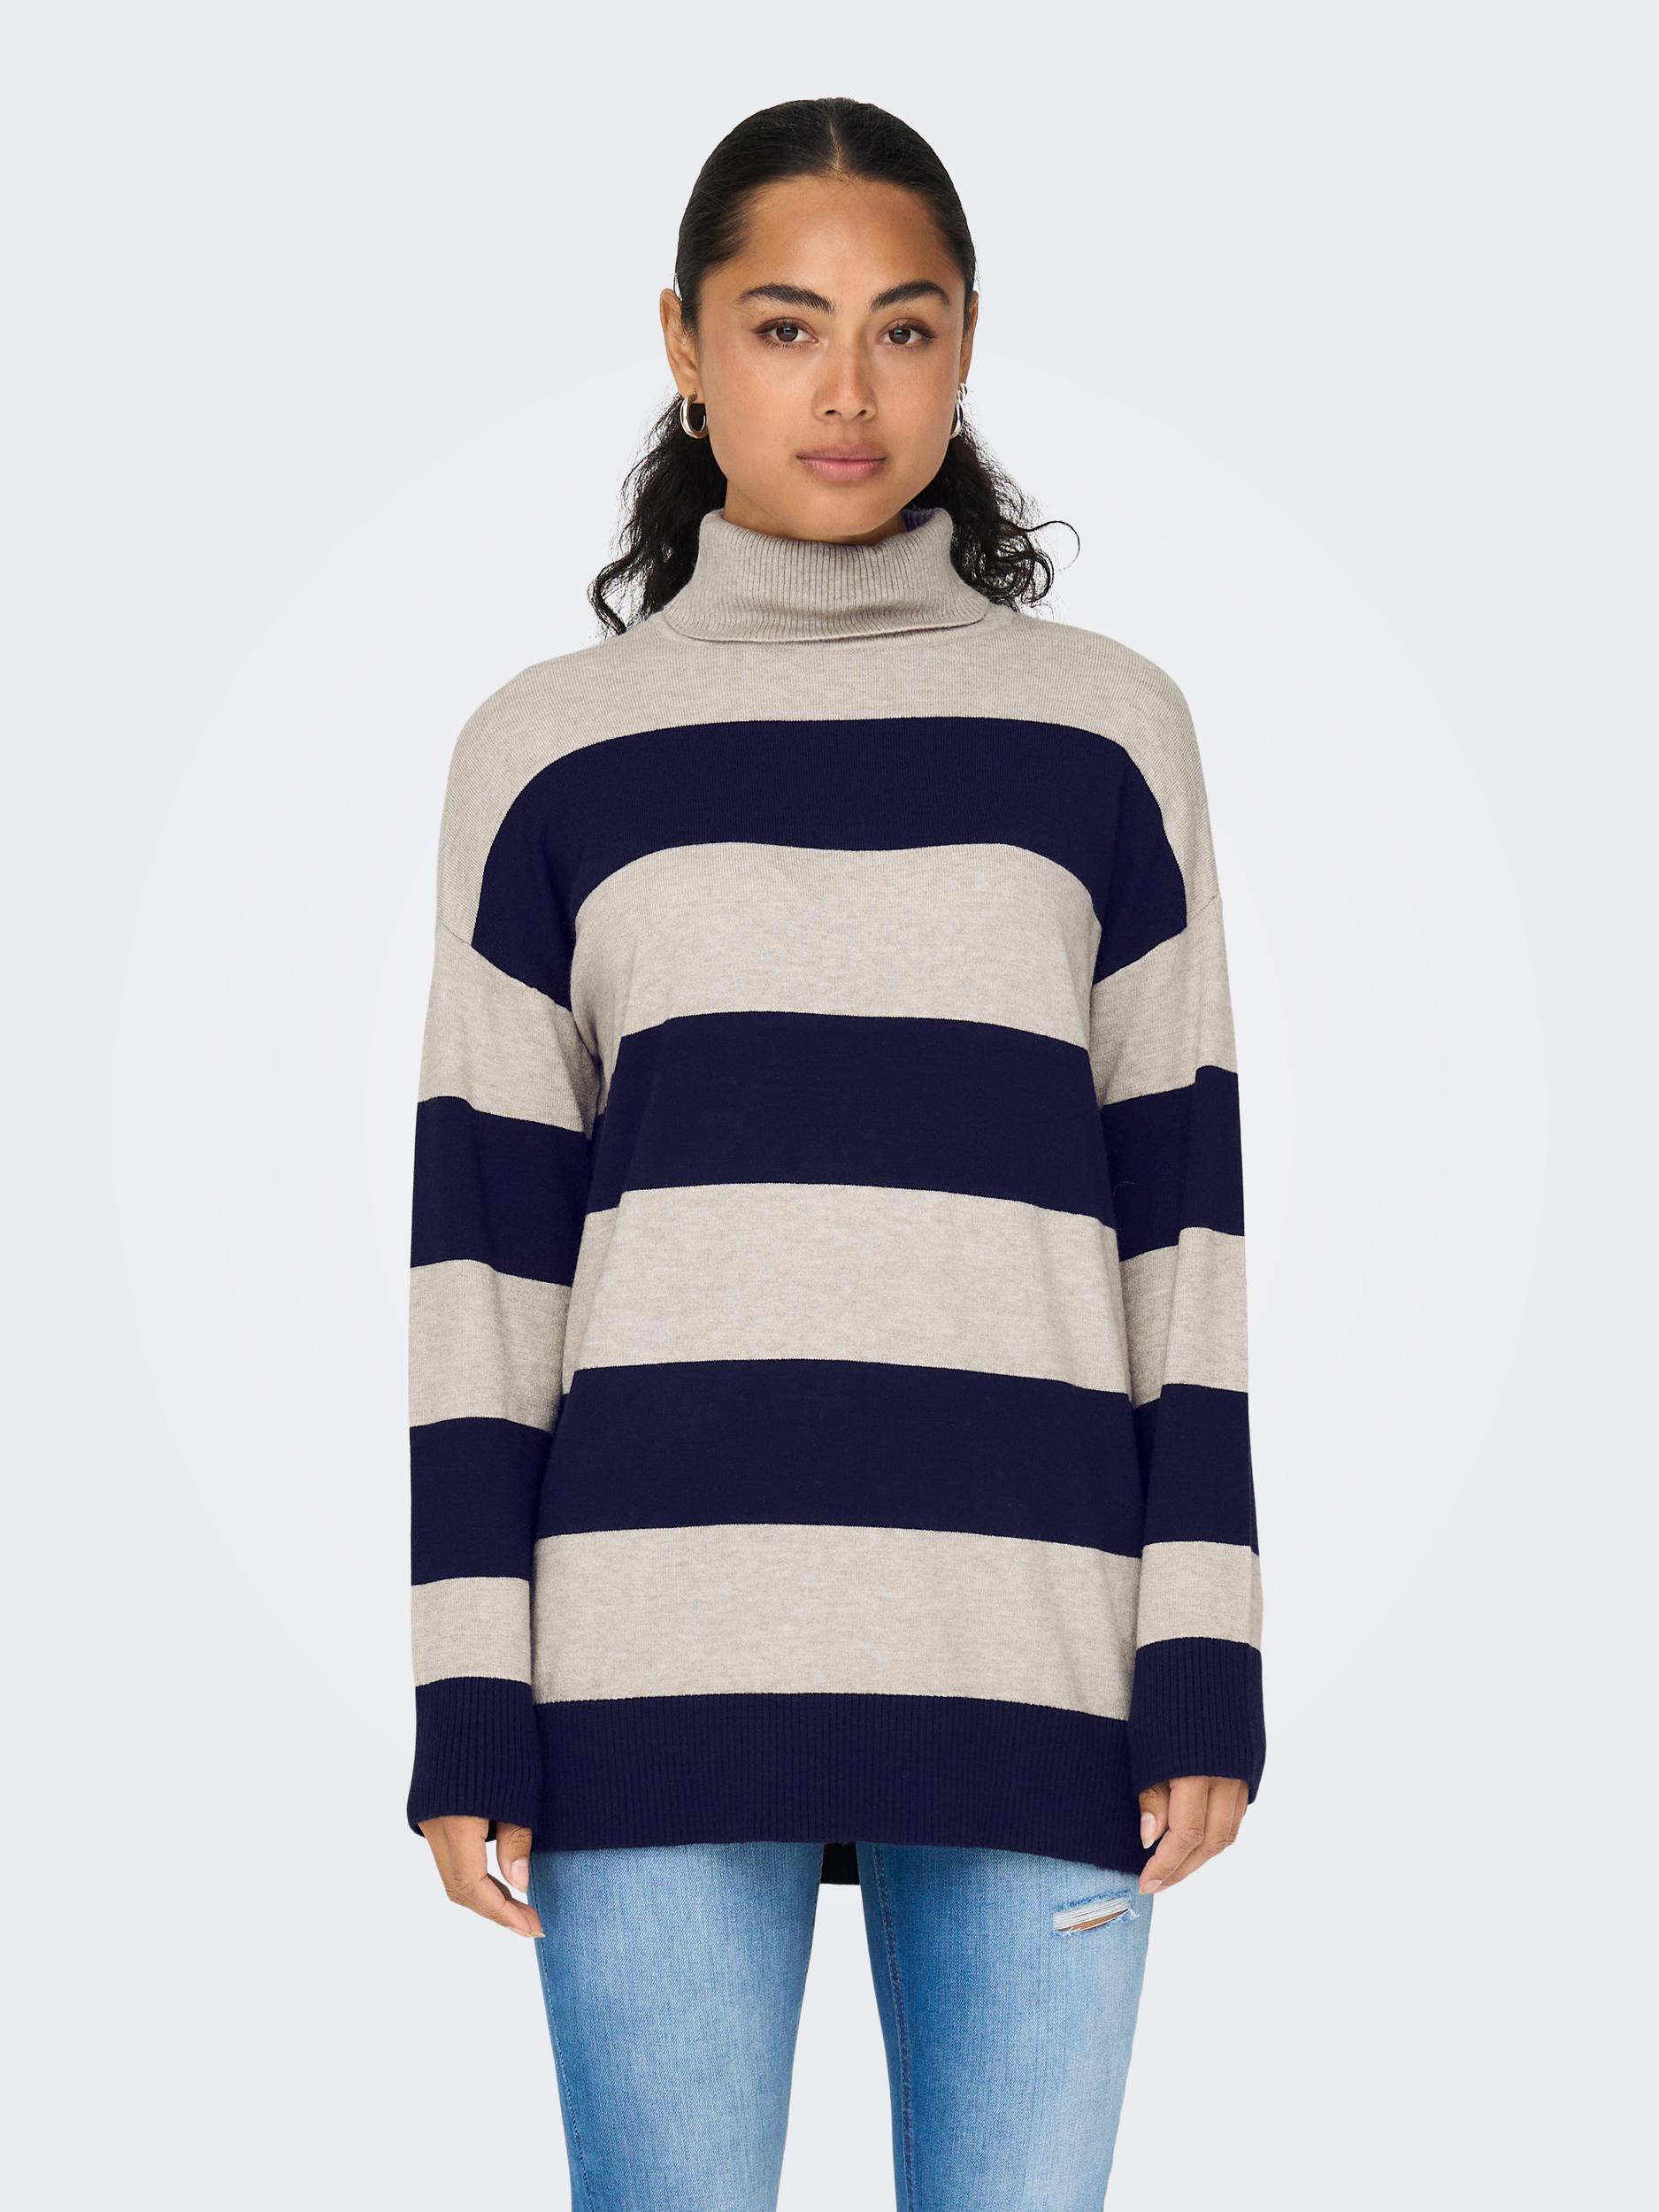 Only - Striped knit turtleneck, Light Beige, large image number 4